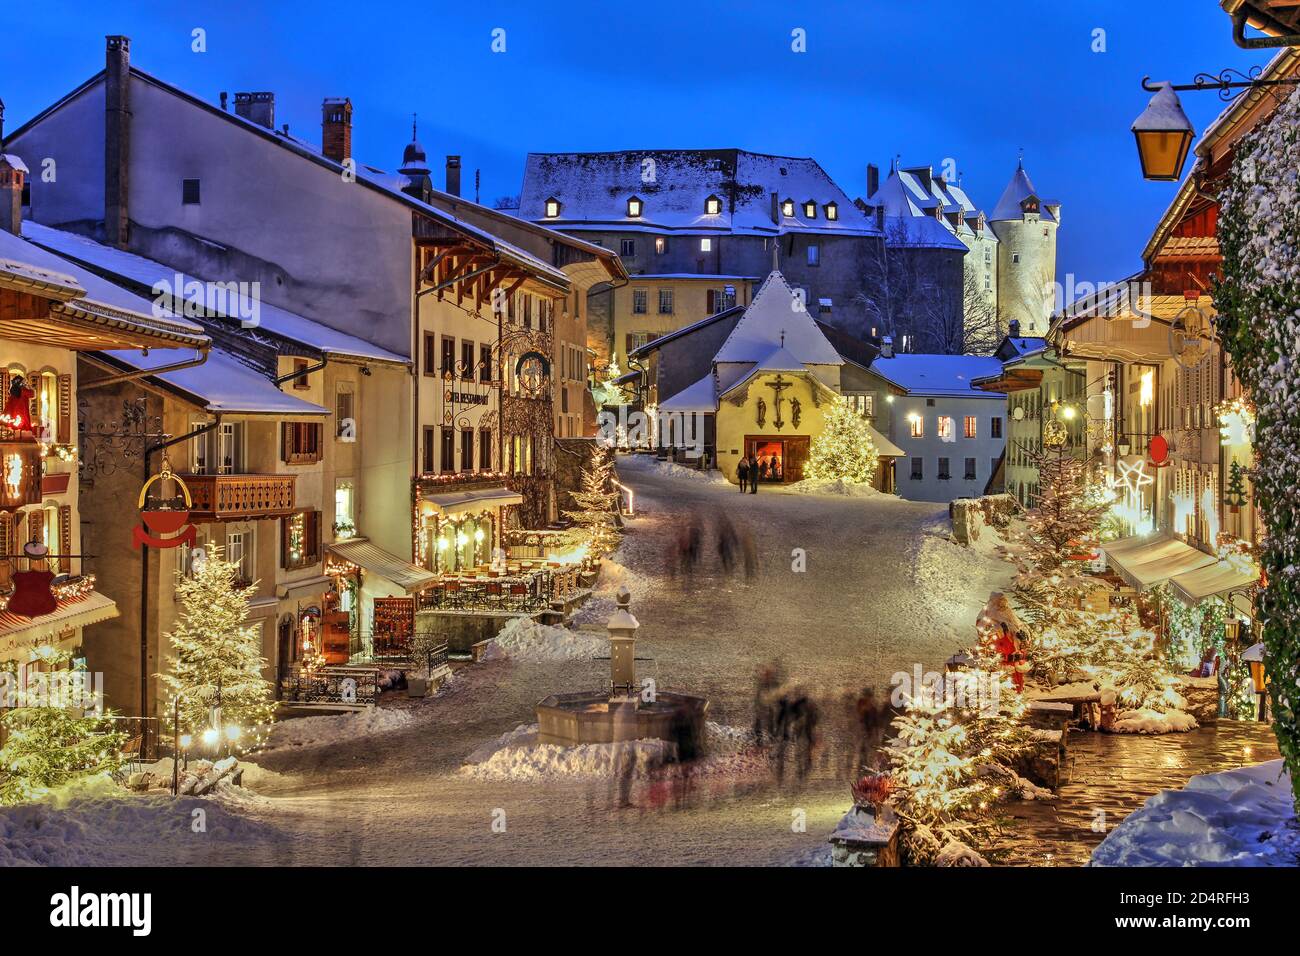 Winter (Weihnachten) in der mittelalterlichen Stadt Gruyeres, Kanton  Freiburg, Schweiz. Im Hintergrund steht das Chateau de Gruyere  Stockfotografie - Alamy